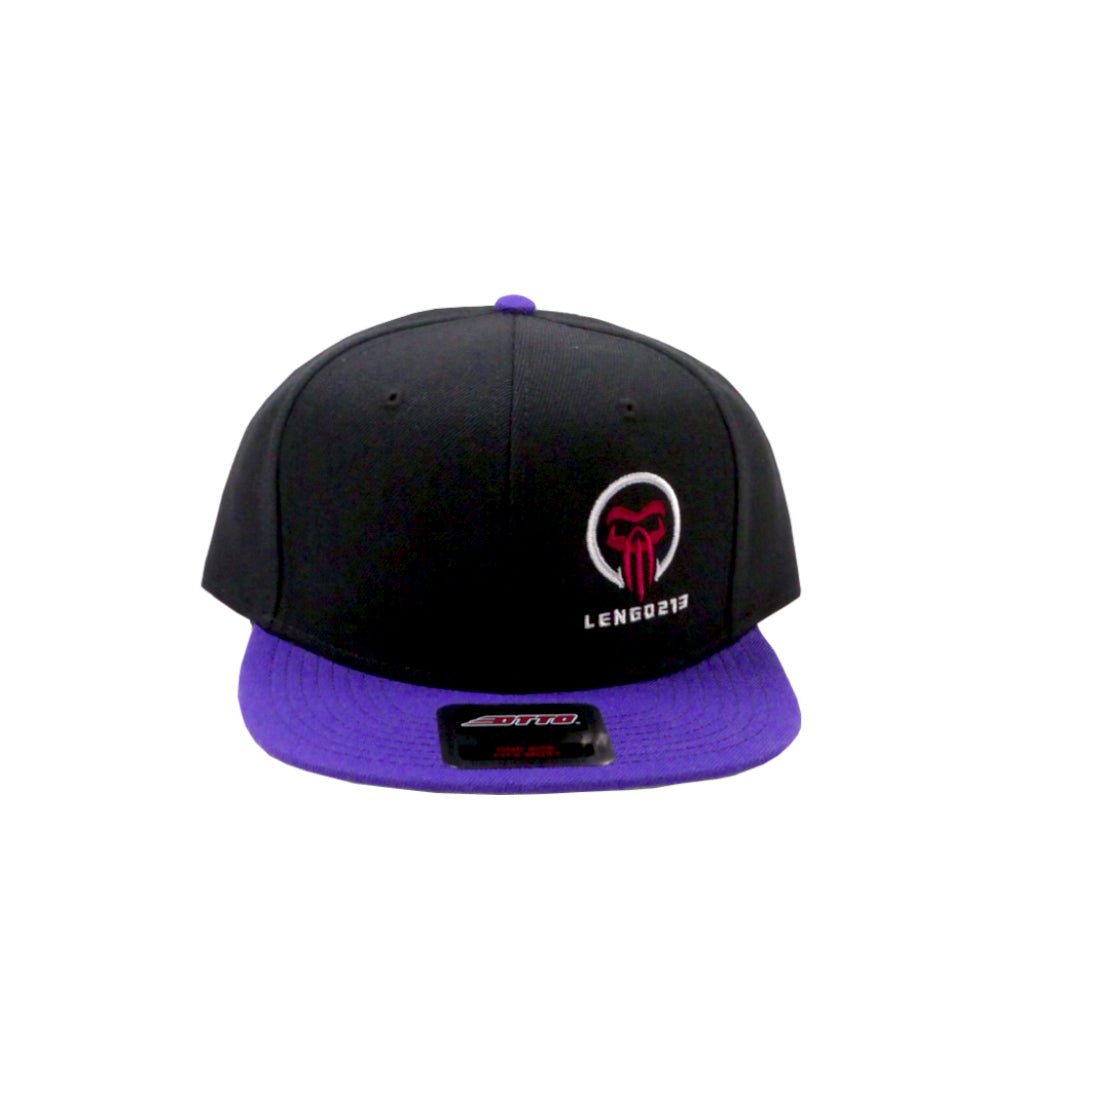 TEAM STORE 974 Cap Lengo213 Edition - Black & Purple - Store 974 | ستور ٩٧٤